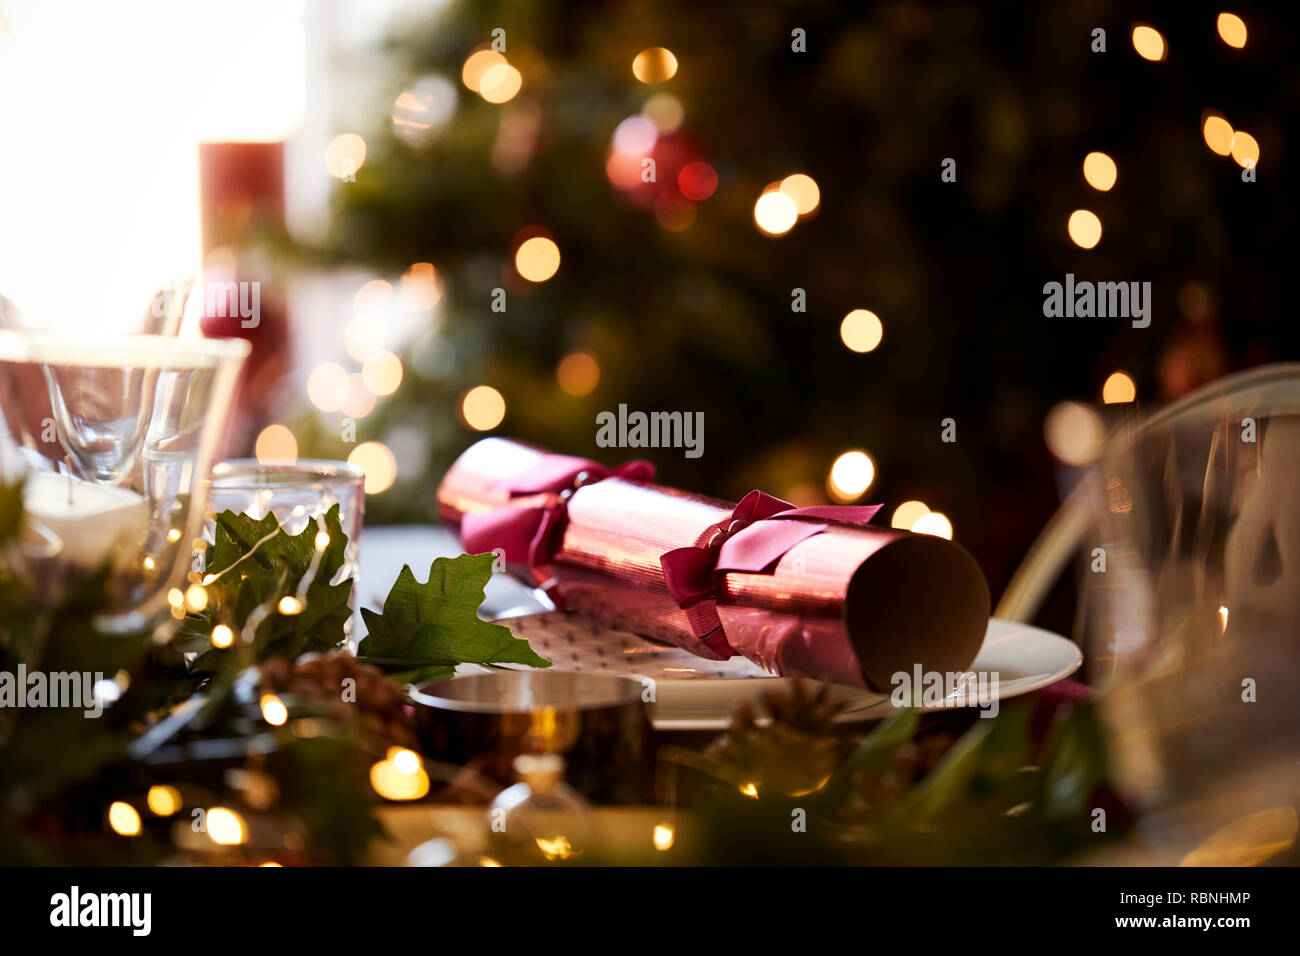 In der Nähe von Weihnachten Tabelle mit einem Christmas Cracker auf eine Platte und ein Weihnachtsbaum im Hintergrund angeordnet Stockfoto